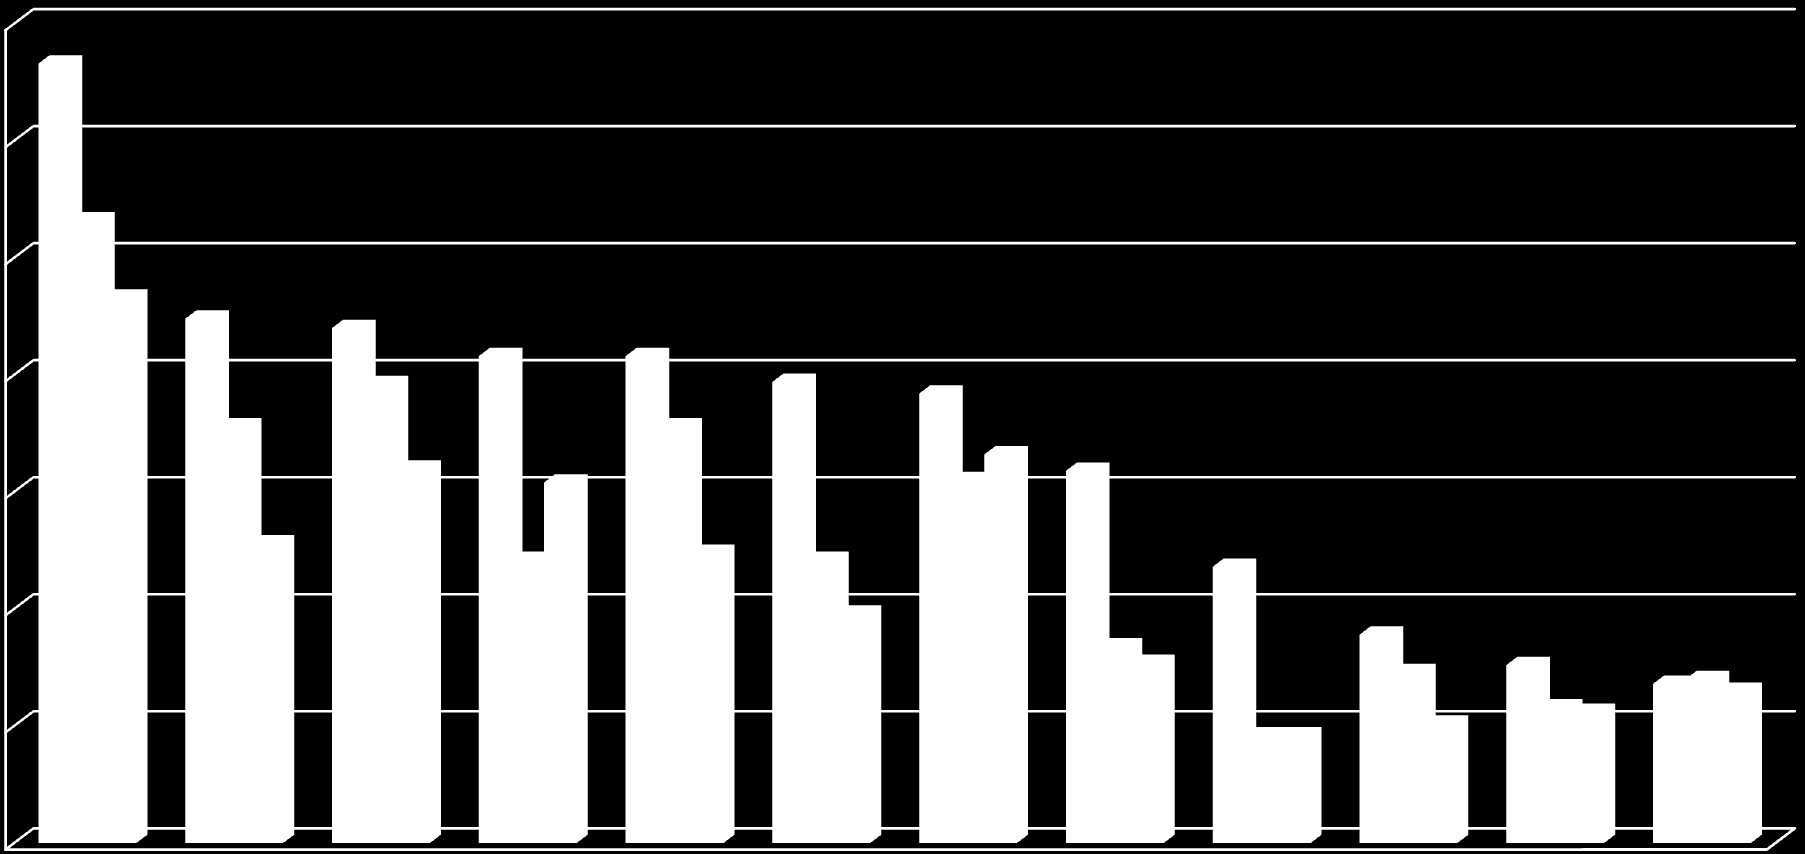 liczba uczniów Nabór do szkół ponadgimnazjalnych prowadzonych przez Powiat Cieszyński w latach 2007/2008 2013/2014 oraz prognoza na rok szk.